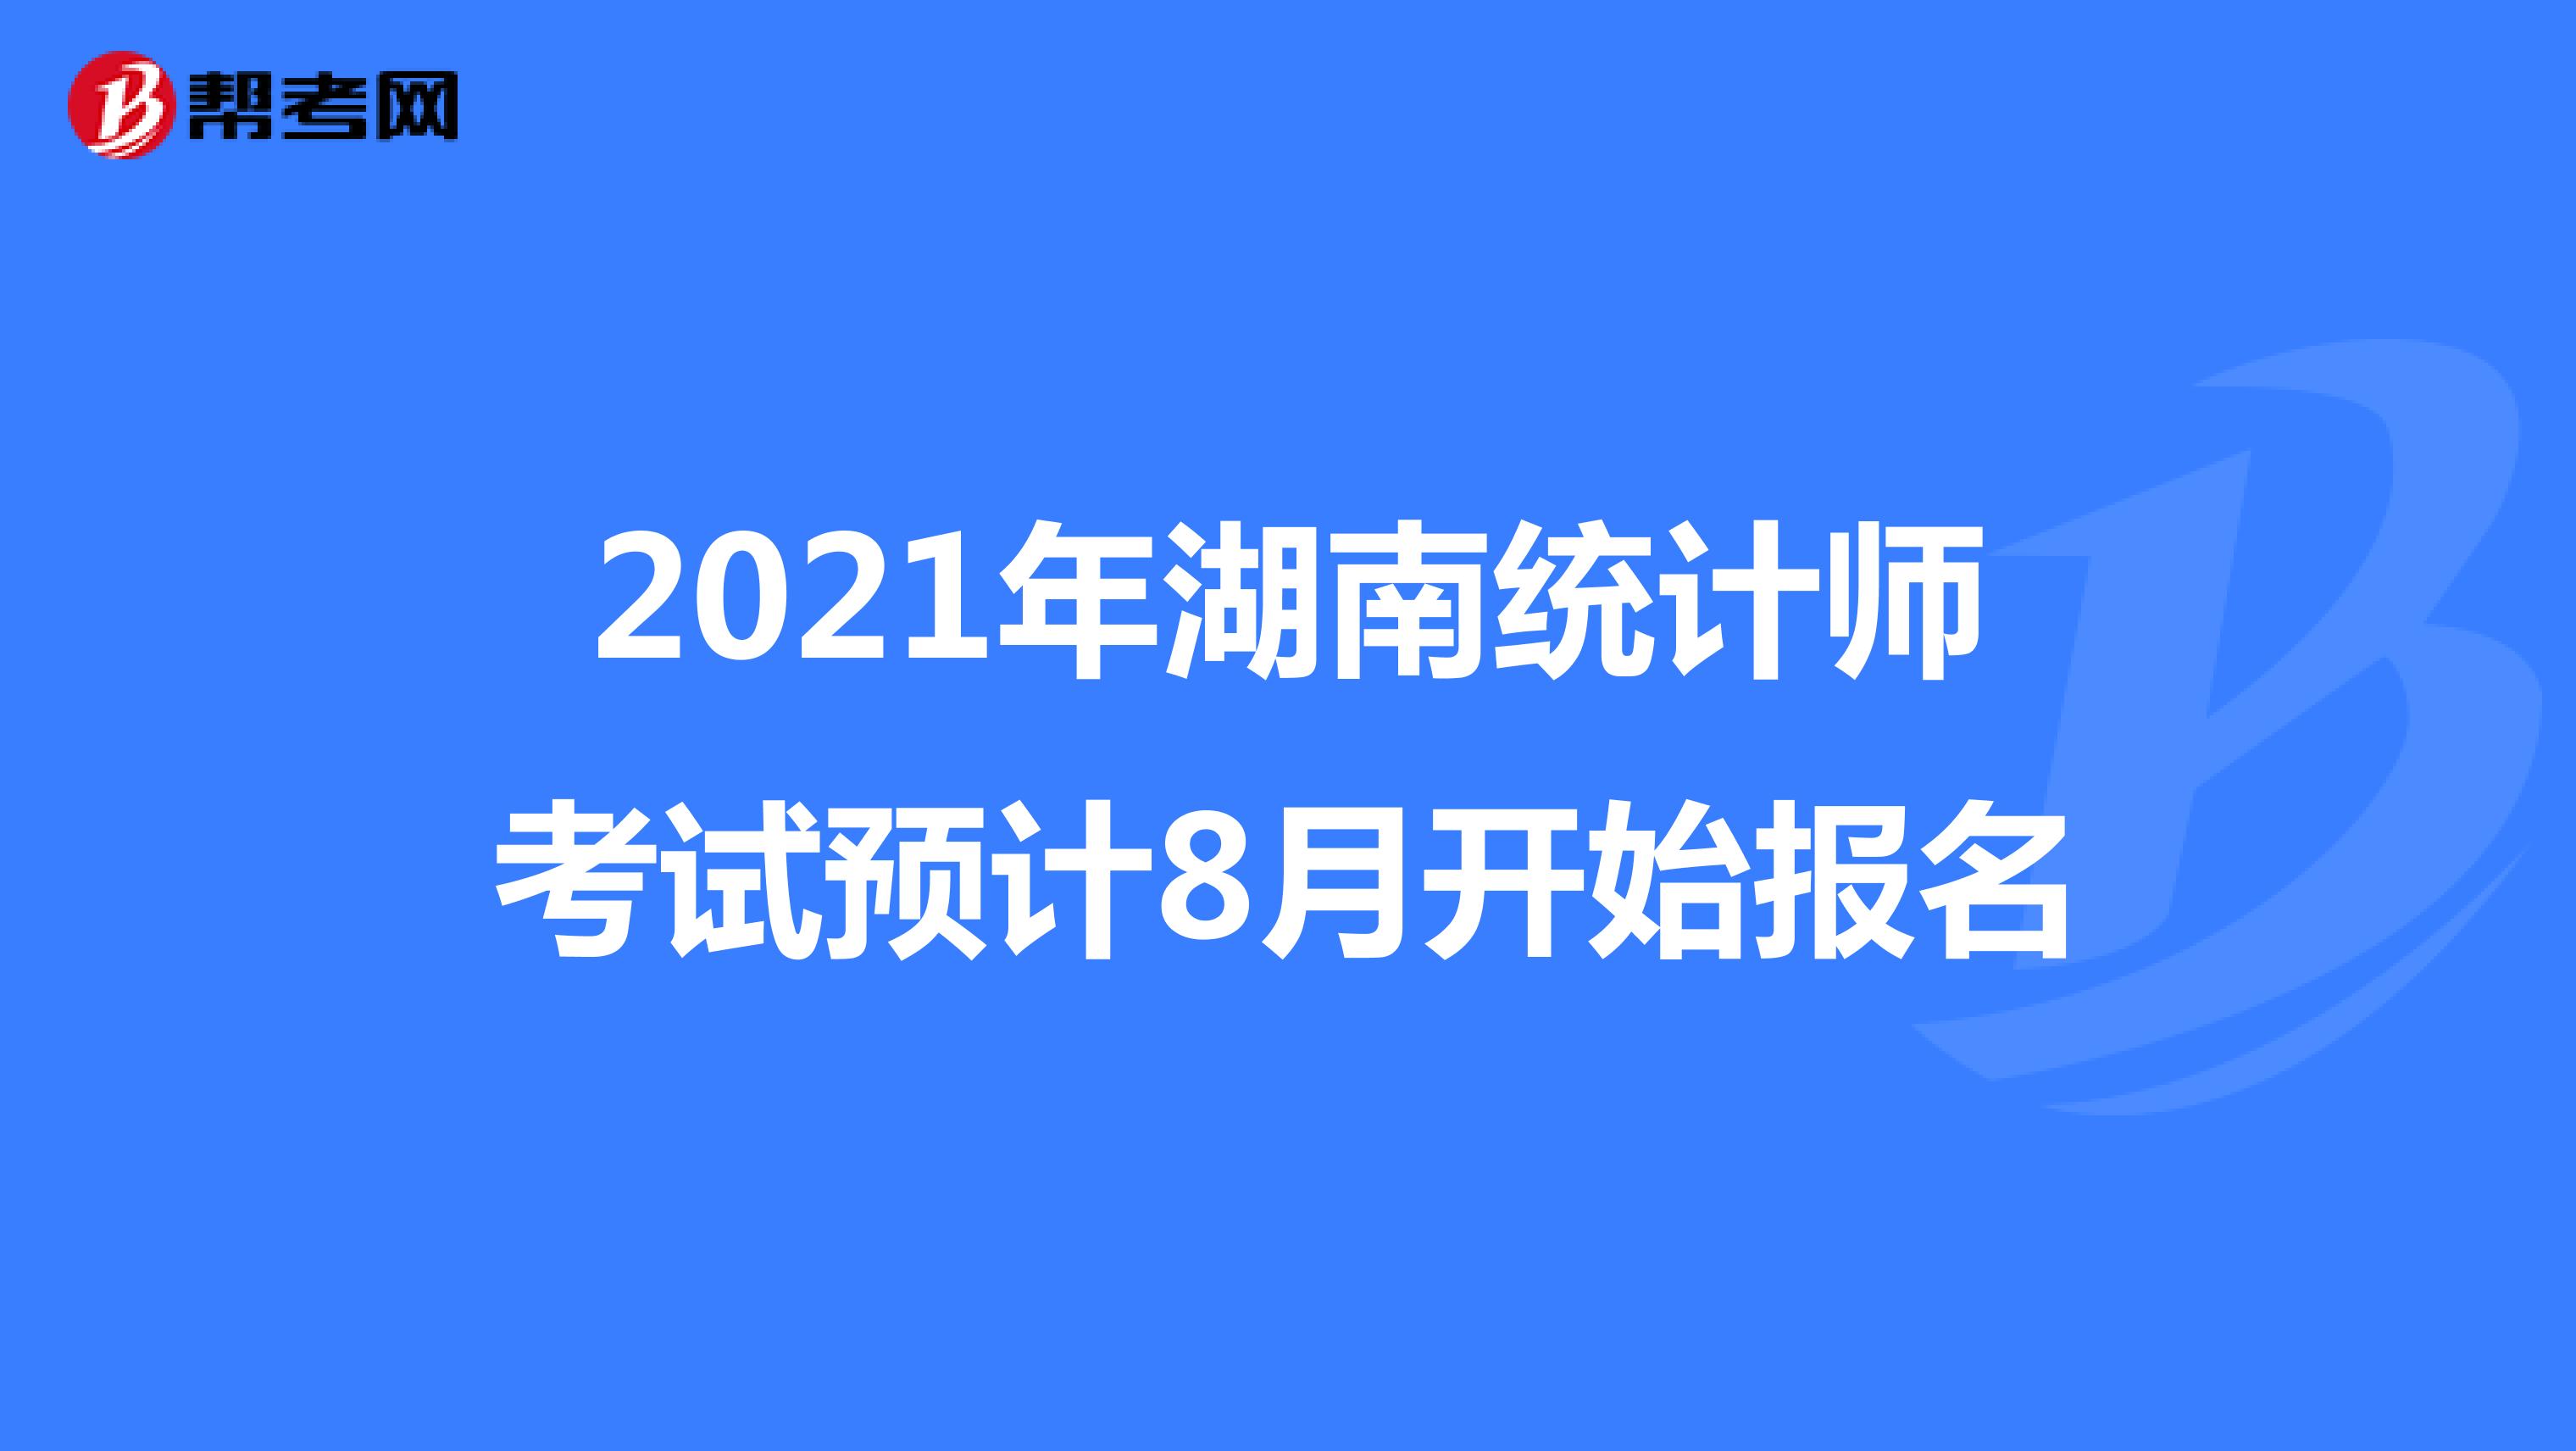 2021年湖南统计师考试预计8月开始报名